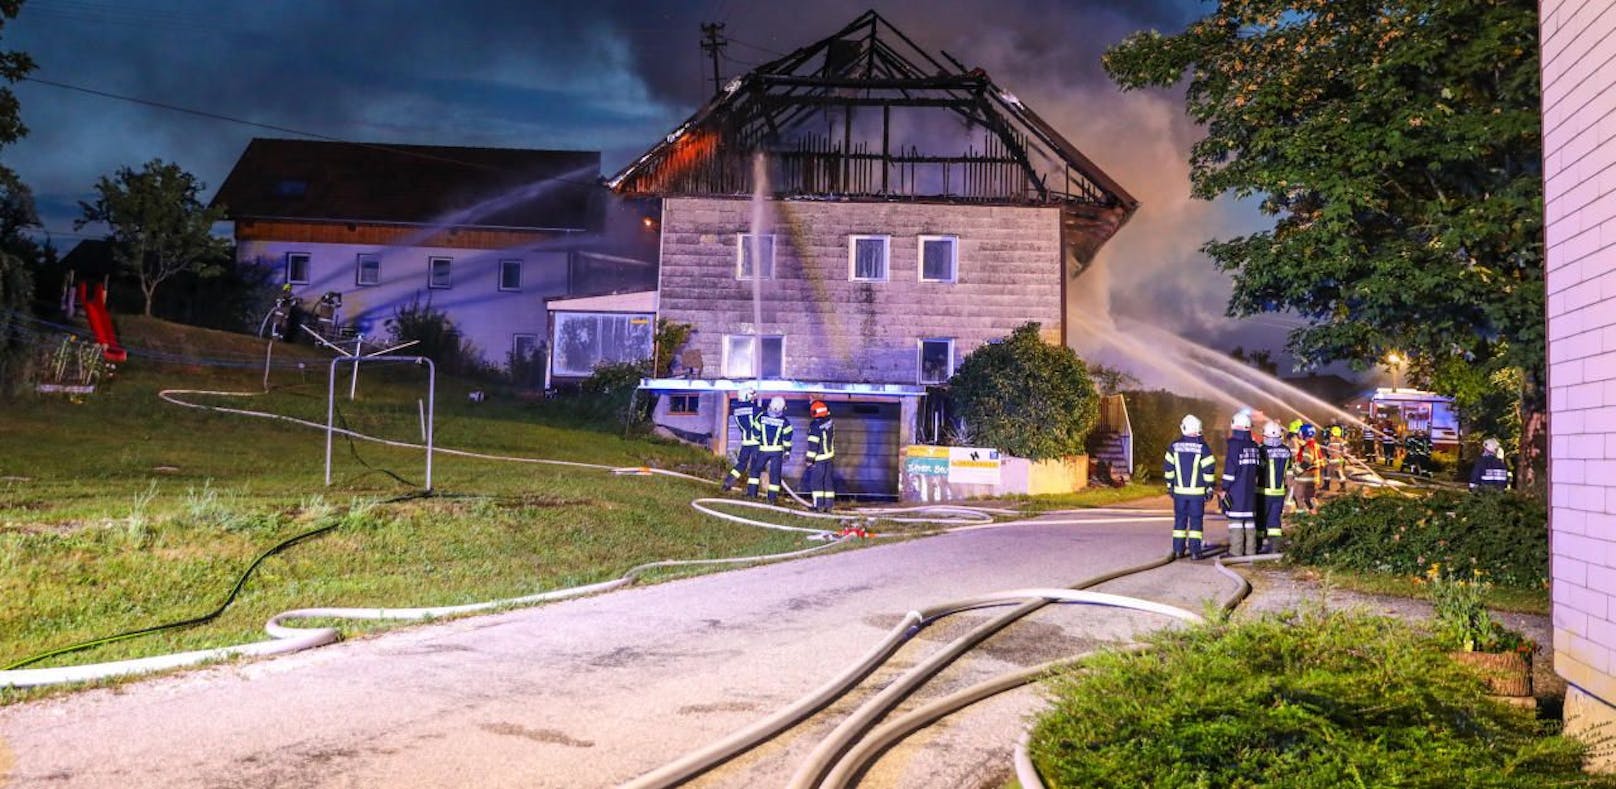 Nachbarn retteten Mann aus brennendem Haus